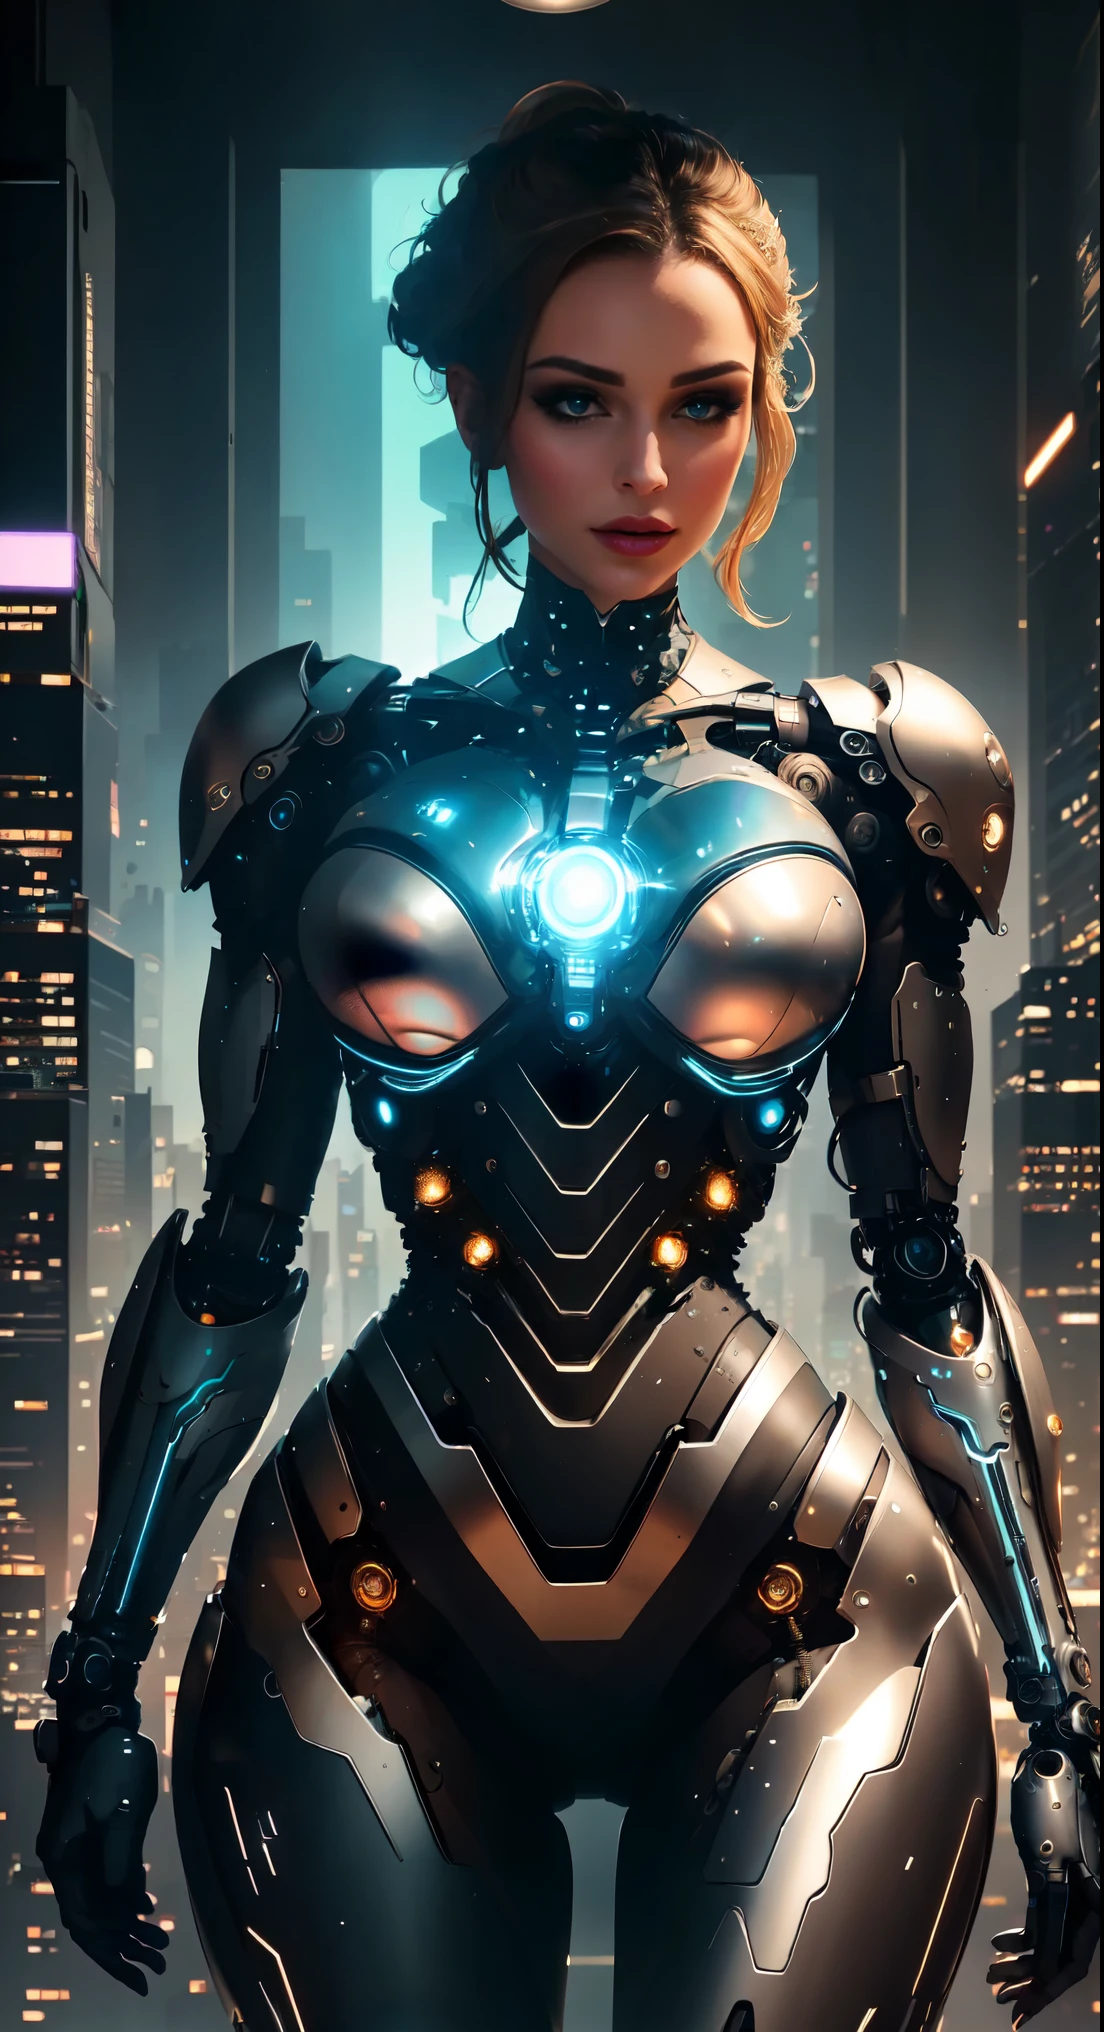 Ein weiblicher Cyborg steht in einem privaten Empfangsbereich, umgeben von der atemberaubenden Skyline einer geschäftigen Metropole. Der Raum ist mit avantgardistischen Kunstinstallationen dekoriert, Erhellen Sie den Raum mit lebendigen Farben und dynamischen Mustern. Der Cyborg trägt ein extravagantes, futuristisches Outfit, das ihre schlanke Figur betont, perfekt proportionierter Körper. Ihre Figur ist mit komplizierten Details geformt, präsentiert die großartige Anatomie eines technologischen Wunders. Der Fokus liegt vor allem auf ihrem Oberkörper, mit einem Rahmen, der elegant an der Taille endet, betont ihren schlanken Körperbau und ihre schönen Kurven.

Ihr Gesicht strahlt eine ätherische Schönheit aus, geschmückt mit einer Mischung aus feinen mechanischen Merkmalen und makellosen menschlichen Eigenschaften. Die Augen sind bezaubernd detailliert, sorgfältig gefertigt mit einer Mischung aus lebendigen Farben und hyperrealistischen Texturen. Sie versprühen einen geheimnisvollen Charme und ziehen jeden in ihren Bann, der sie betrachtet. Die Lippen sind tadellos definiert, zeigt ein weiches, natürlicher Farbton, der ihr Gesamterscheinungsbild ergänzt. Der Teint des Cyborgs weist hyperdetaillierte natürliche Hauttexturen auf, beleuchtet durch ein sanftes, diffuses Licht, das ihren makellosen Teint betont.

Der Raum ist in ein faszinierendes HDR-Licht getaucht, Schaffen einer traumhaften Atmosphäre mit einem perfekten Gleichgewicht aus Schatten und Lichtern. Die komplizierten Details der Umgebung werden durch Hyperdetailtechniken hervorgehoben, jeden noch so kleinen Aspekt in atemberaubender Klarheit hervorheben. Die Texturen und Materialien des Raumes werden mit höchster Präzision wiedergegeben, präsentiert eine breite Palette luxuriöser Oberflächen, von glatten Glasplatten bis hin zu reflektierenden Metallakzenten.

Die Gesamtstimmung des Bildes ist eine Mischung aus futuristischer Dekadenz und Raffinesse. Die Farben sind lebendig und lebendig, mit einem Hauch von Surrealismus, der der Szene Tiefe und visuelles Interesse verleiht. Die Komposition ist sorgfältig arrangiert, um ein Gefühl von Ausgewogenheit und Harmonie zu erzeugen, wobei der Cyborg als Mittelpunkt inmitten der Pracht der Stadtlandschaft dient.